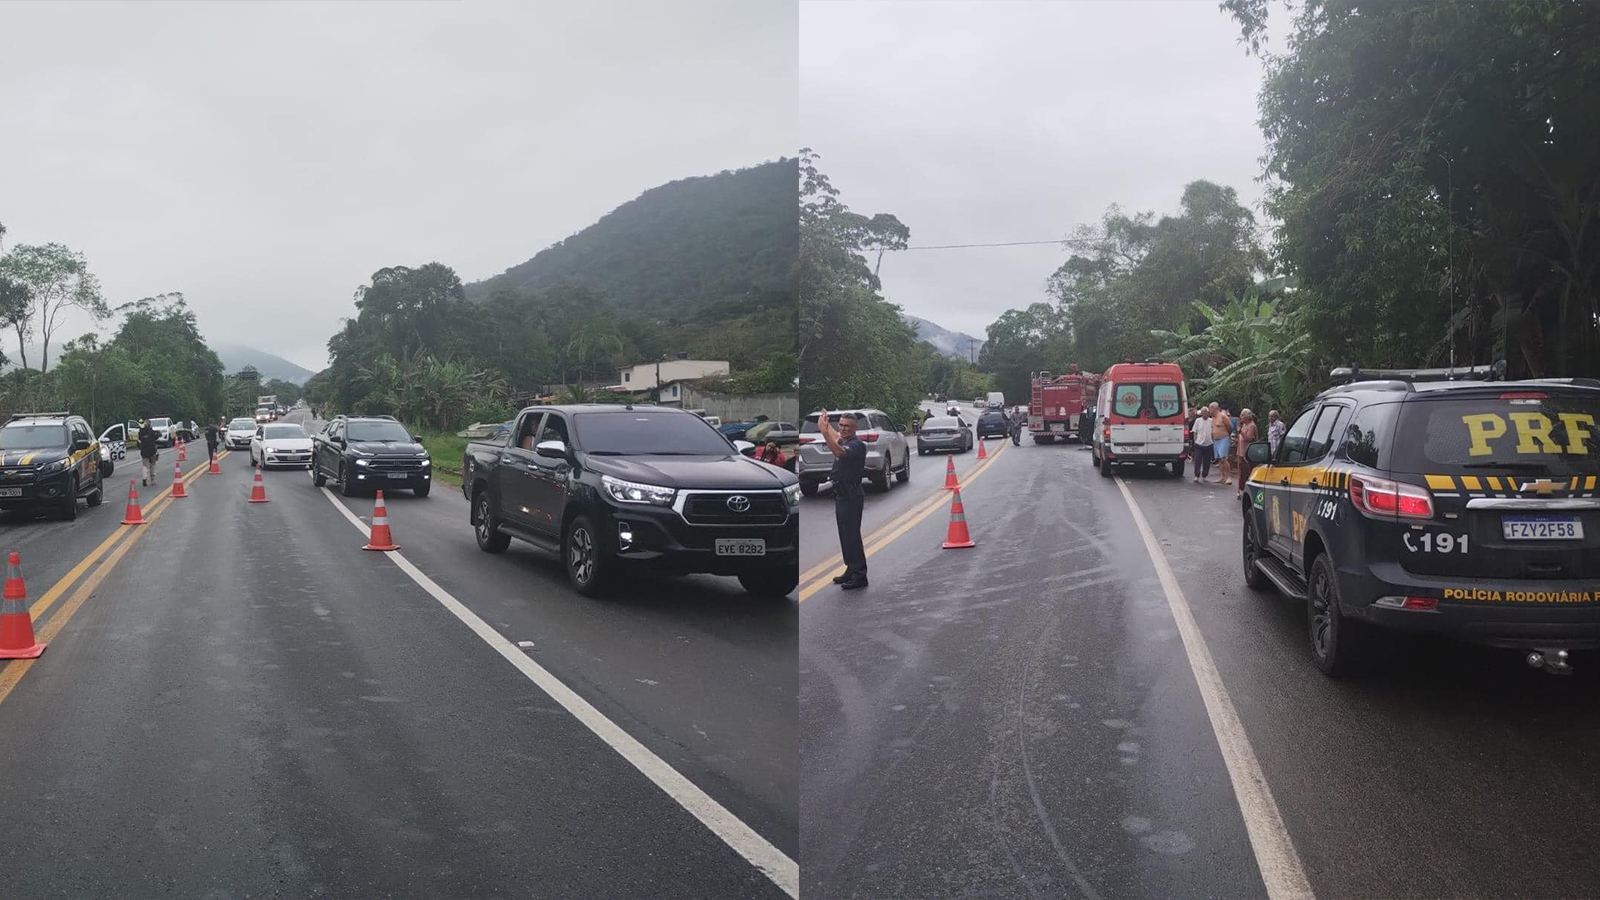 trafego lento na rodovia Rio Santos após grave acidente